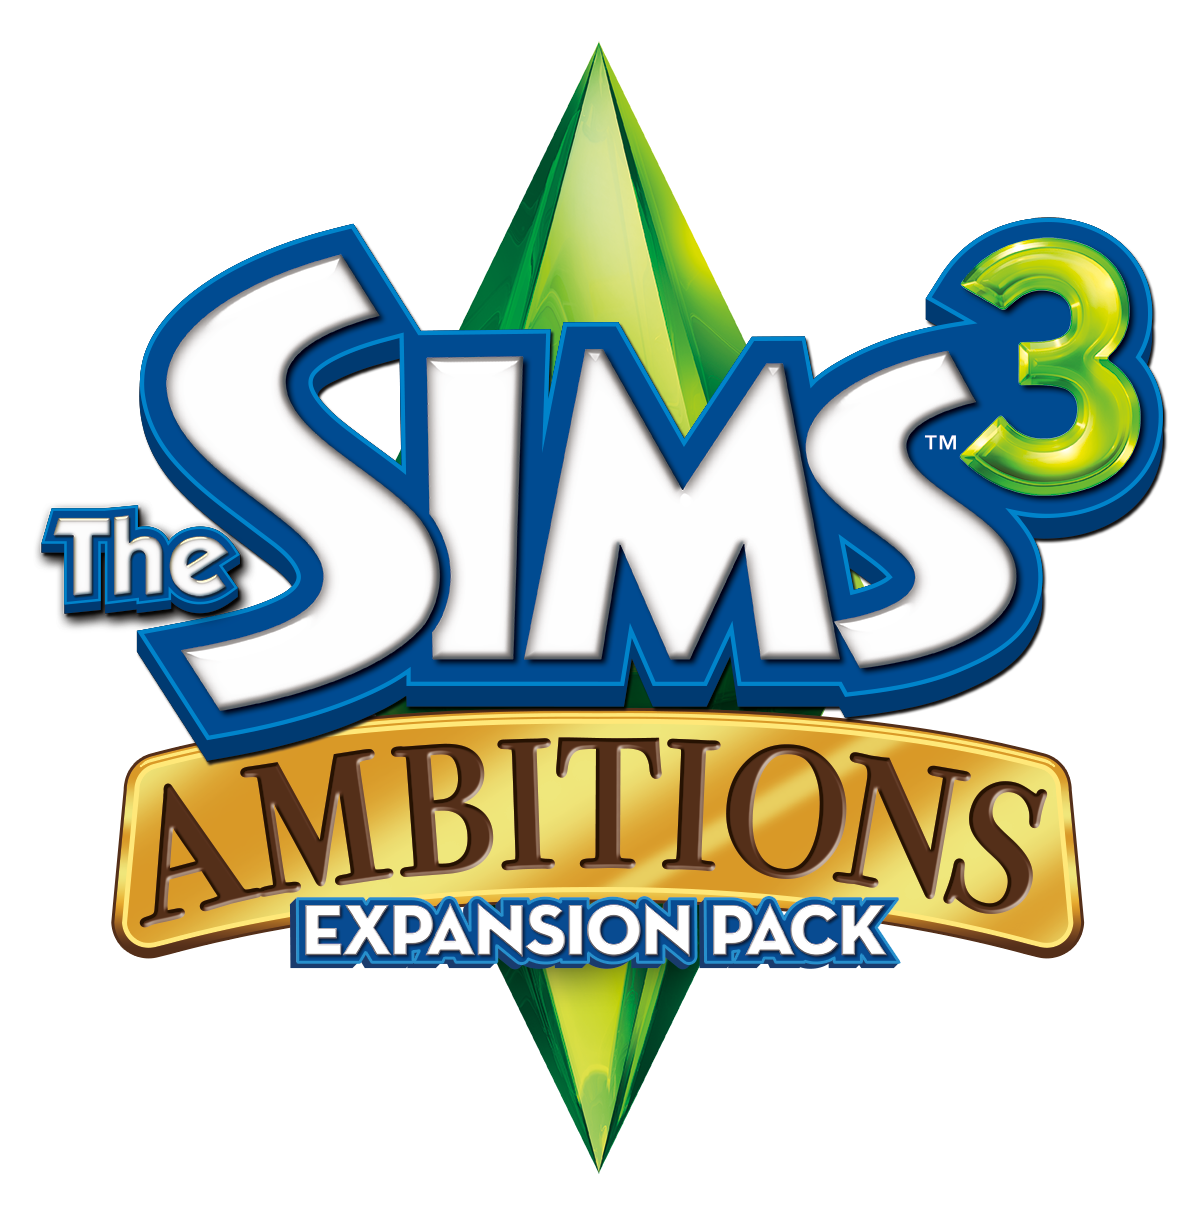 The Sims 5 - Fan Logo (Plumbob) by WesleyVianen on DeviantArt